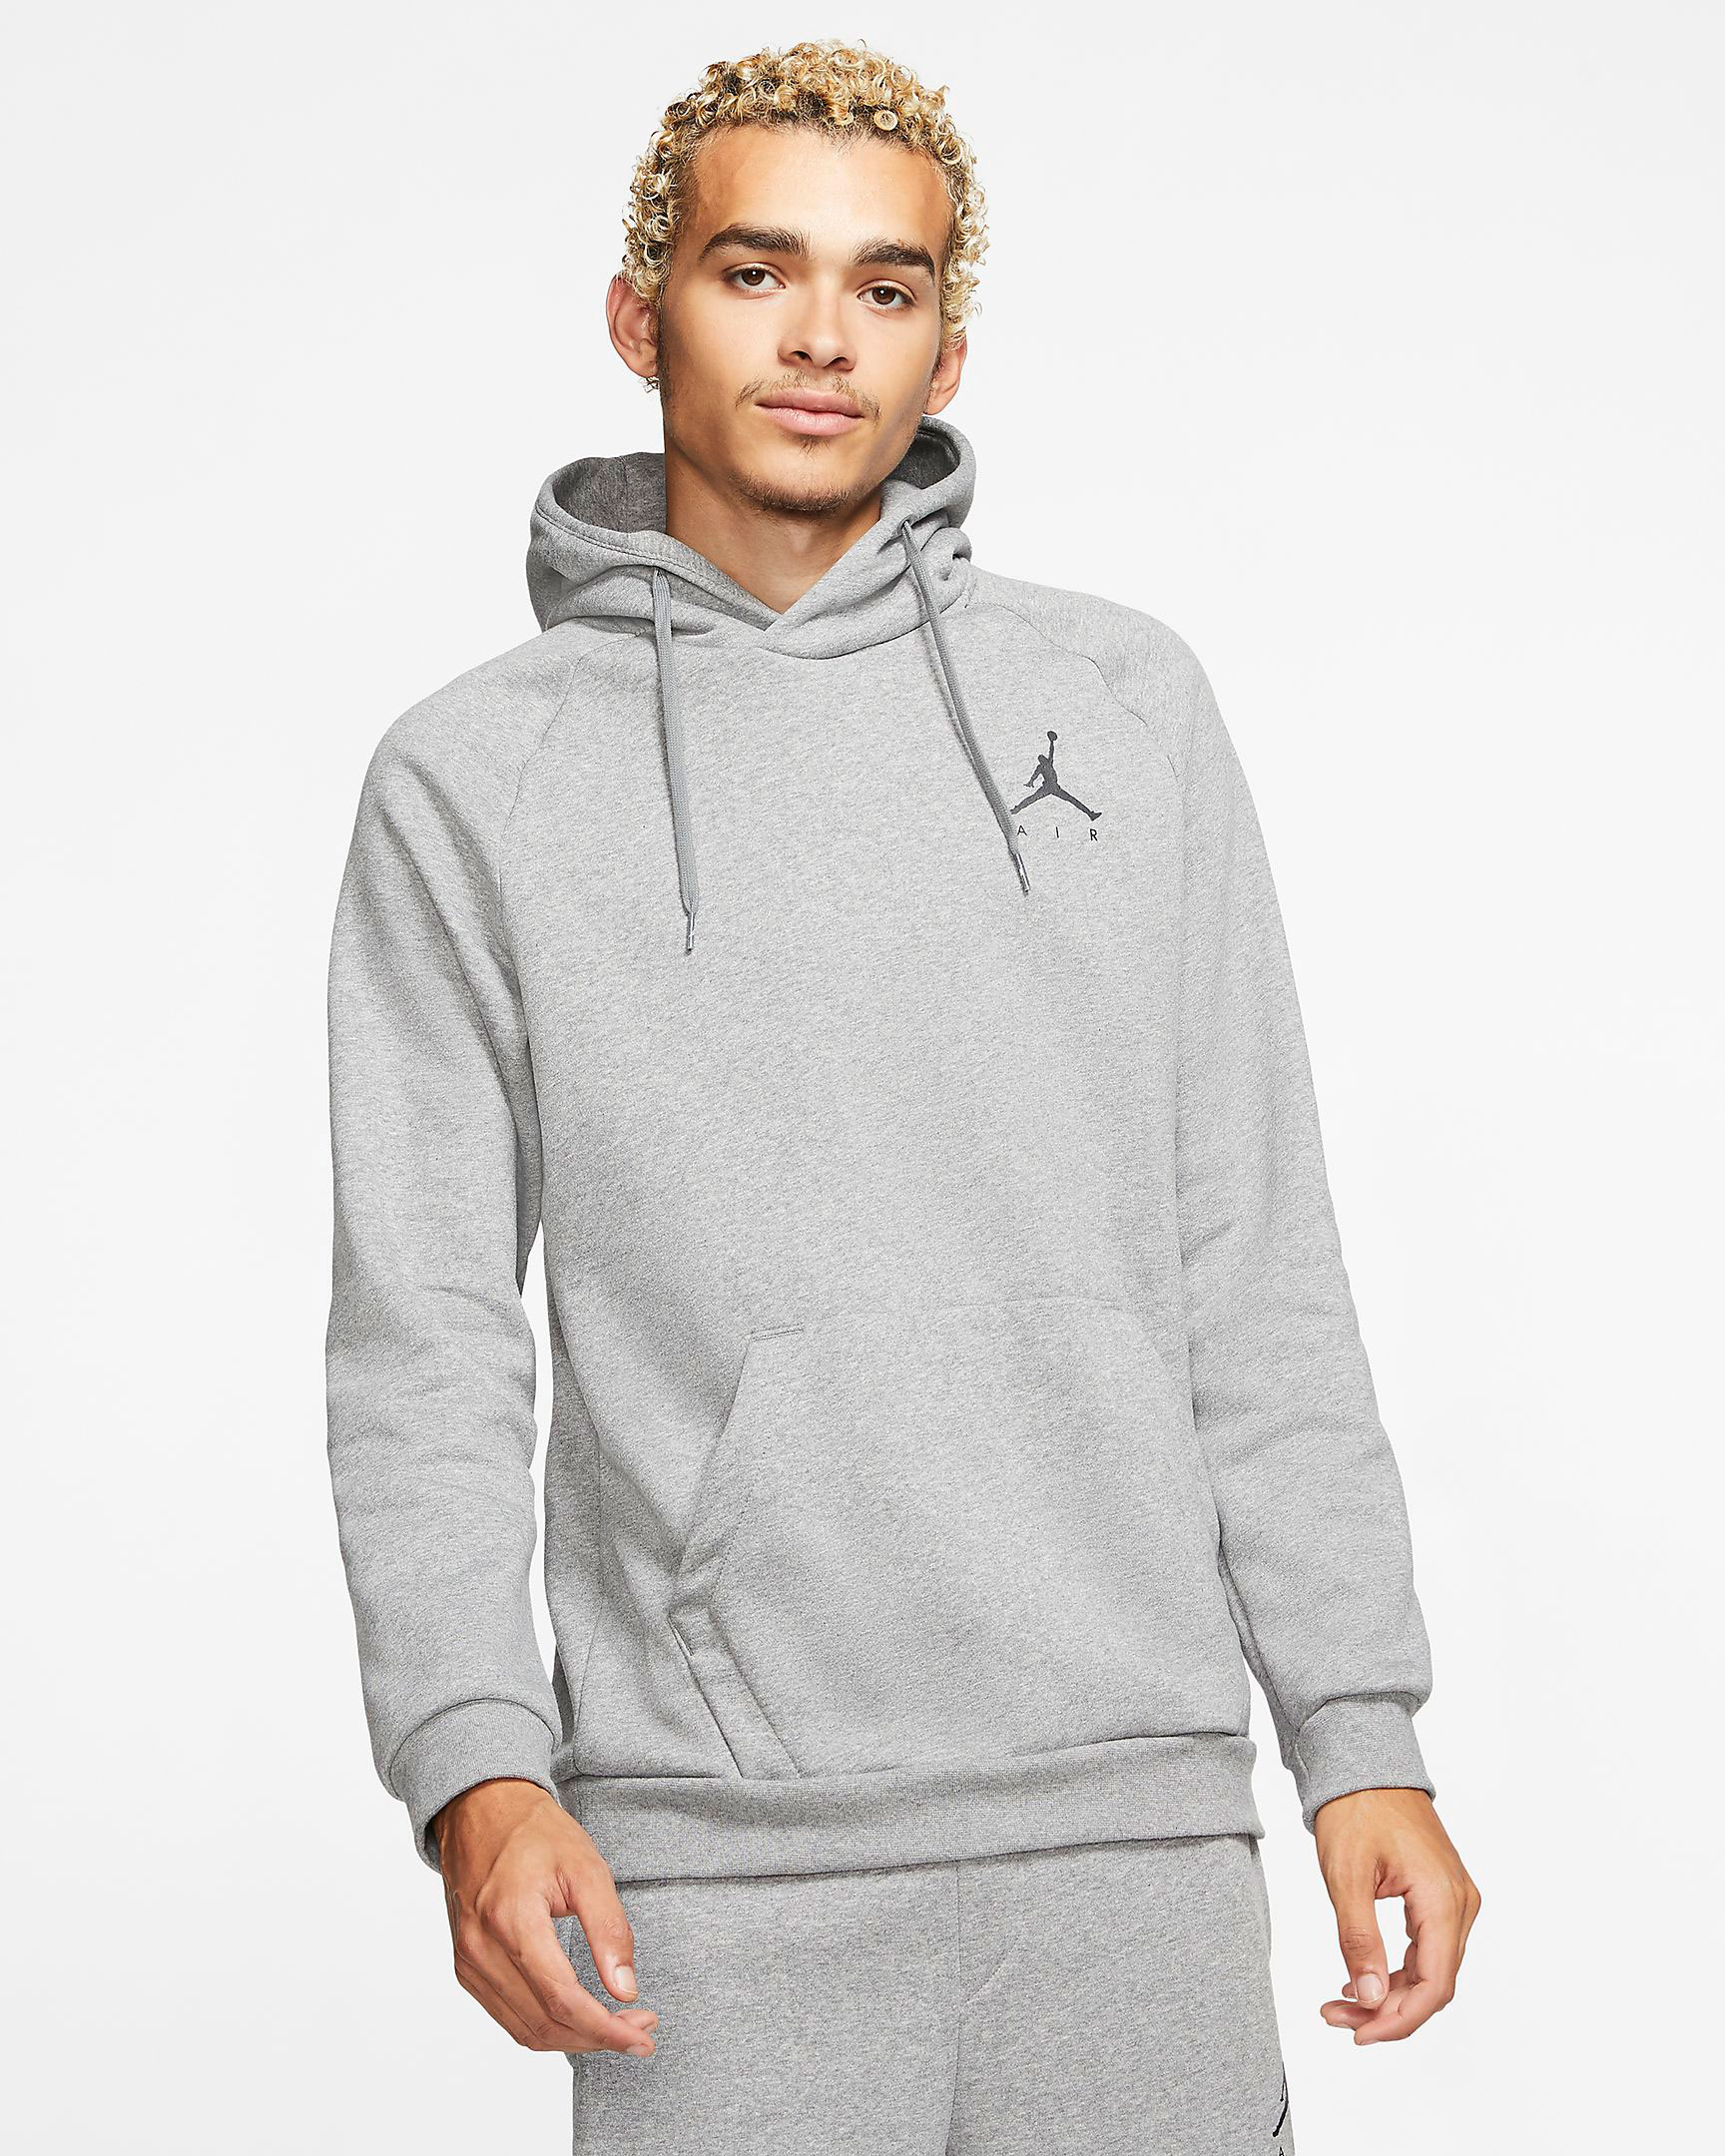 gray jordan hoodie